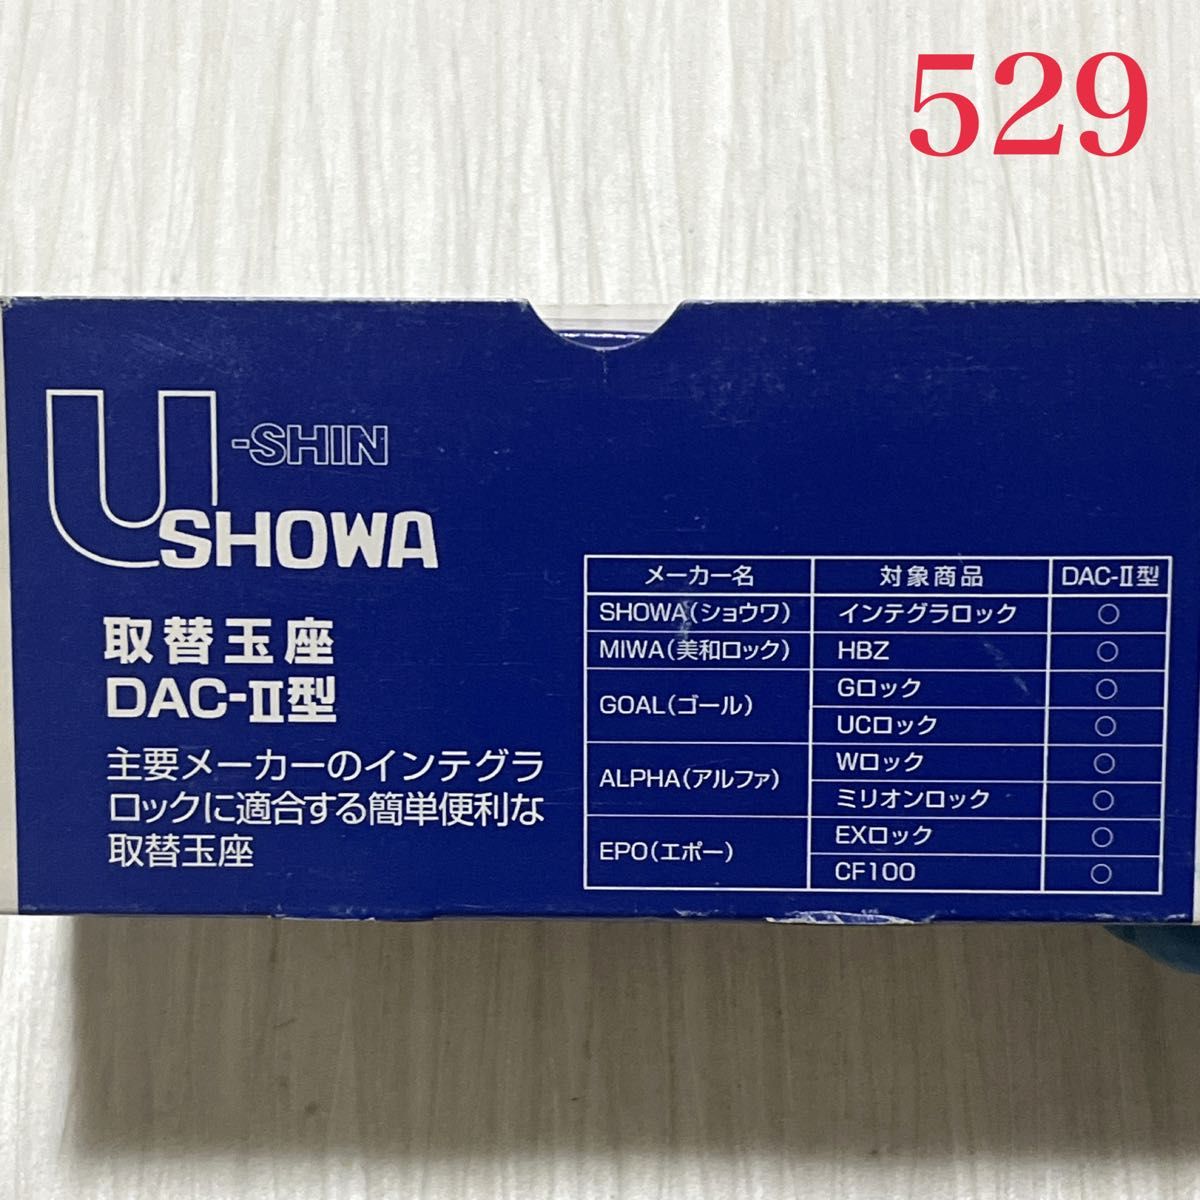 ☆最終価格です☆【529】SHOWA 取替玉座 DAC-Ⅱ型 カギなしサムターンのみ